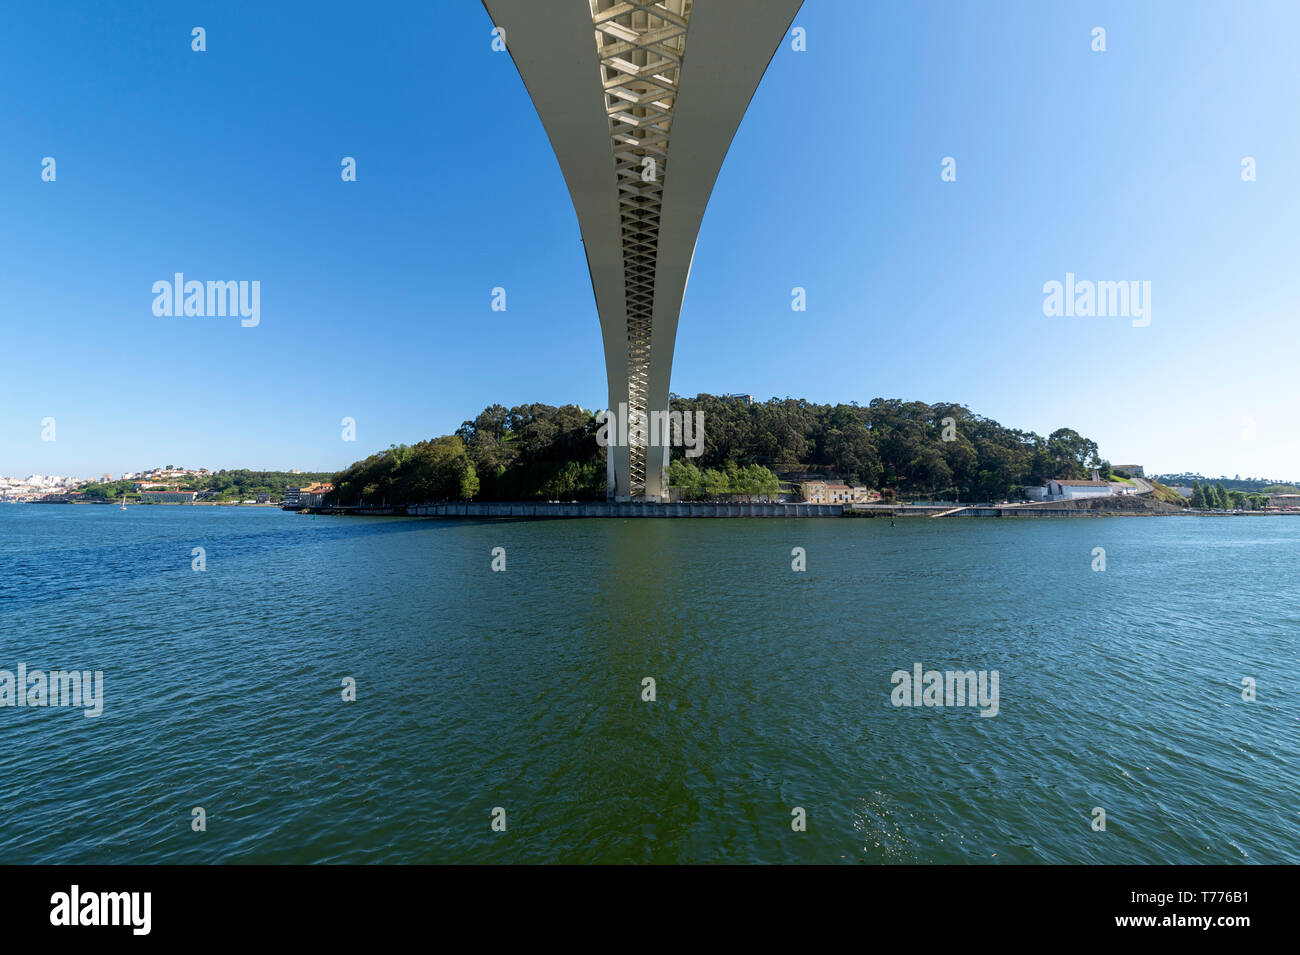 Unter dem modernen konkrete Ponte da arrabida Brücke in Porto, Portugal, überspannt den Rio Douro. Stockfoto